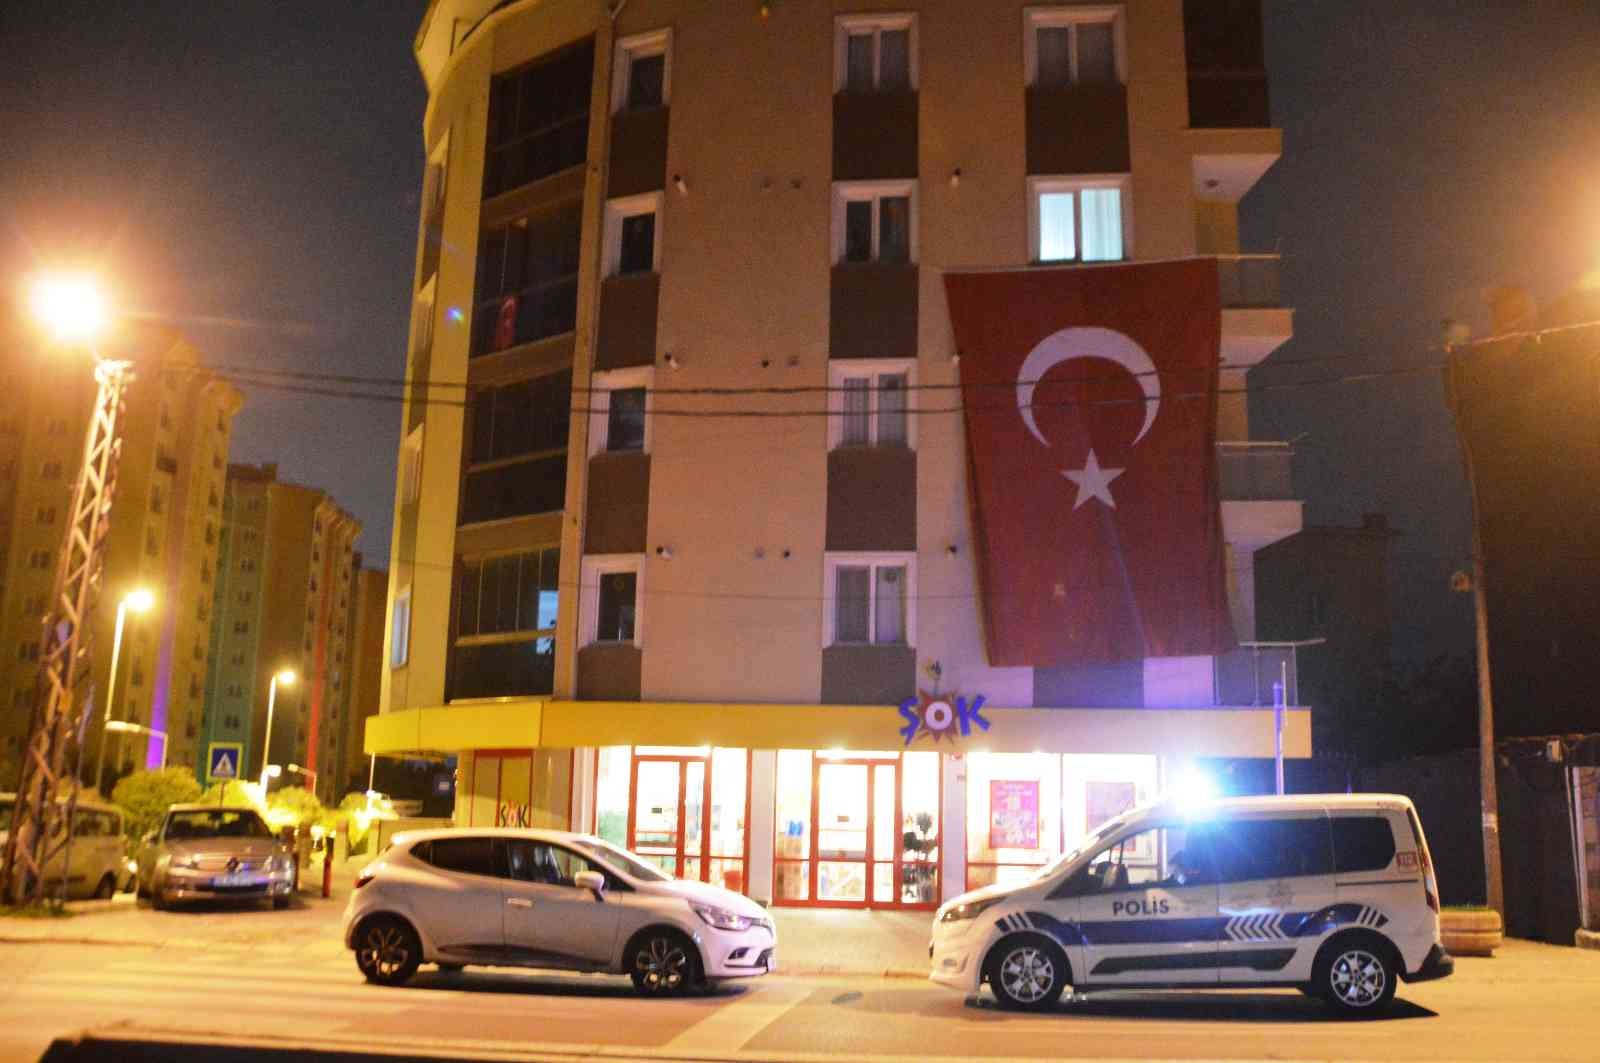 Şırnak’ta şehit olan askerin İstanbul’daki evine Türk bayrağı asıldı #istanbul